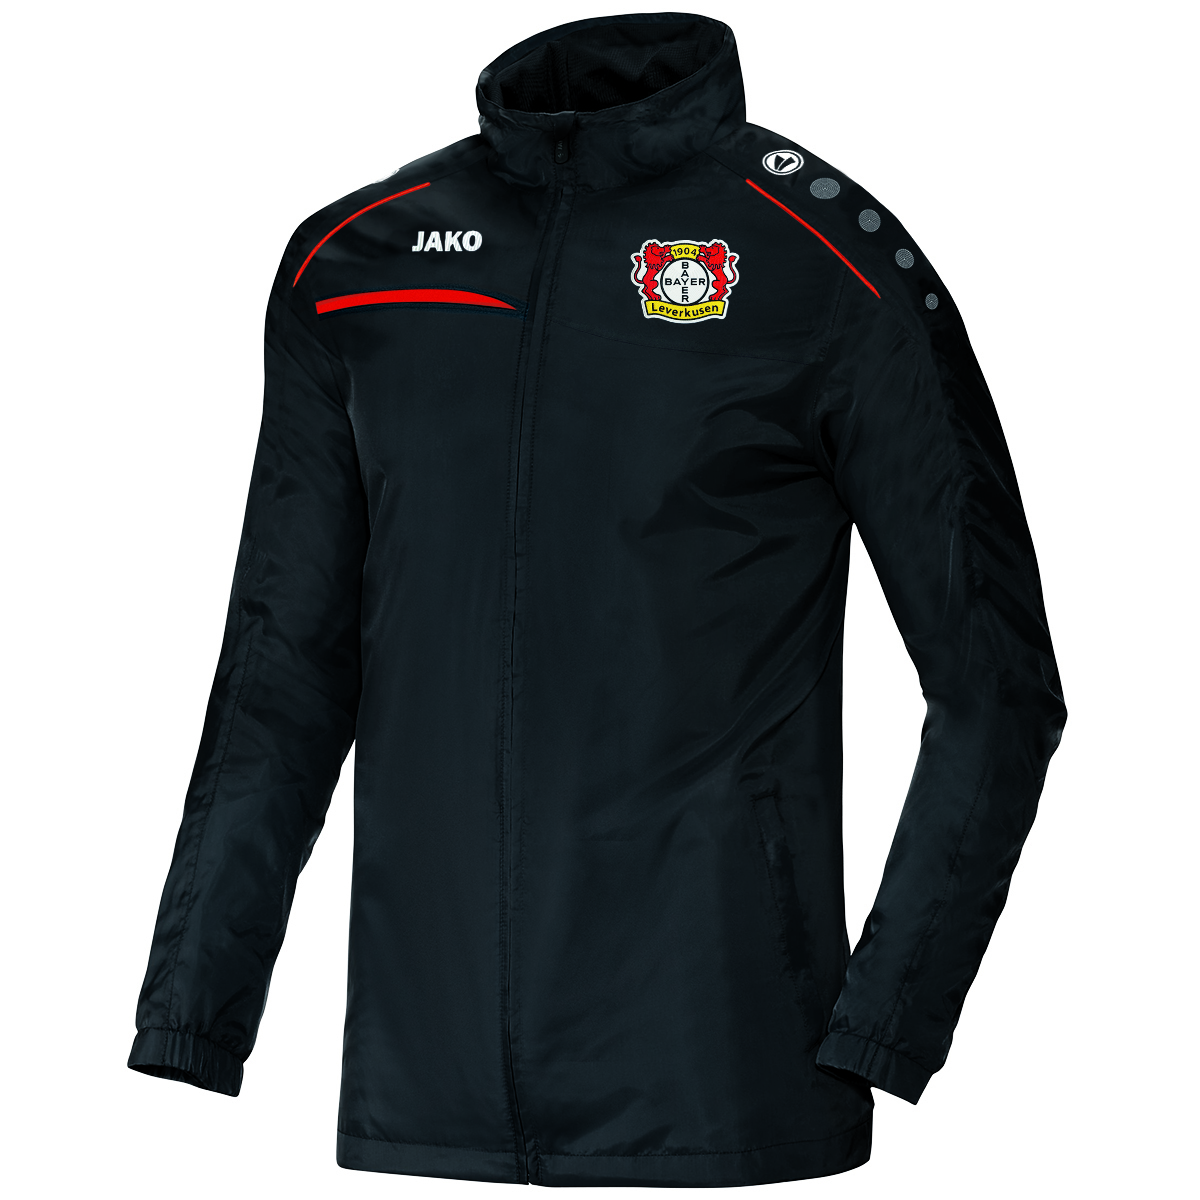 JAKO Bayer 04 Leverkusen Prestige Allwetterjacke Jacke